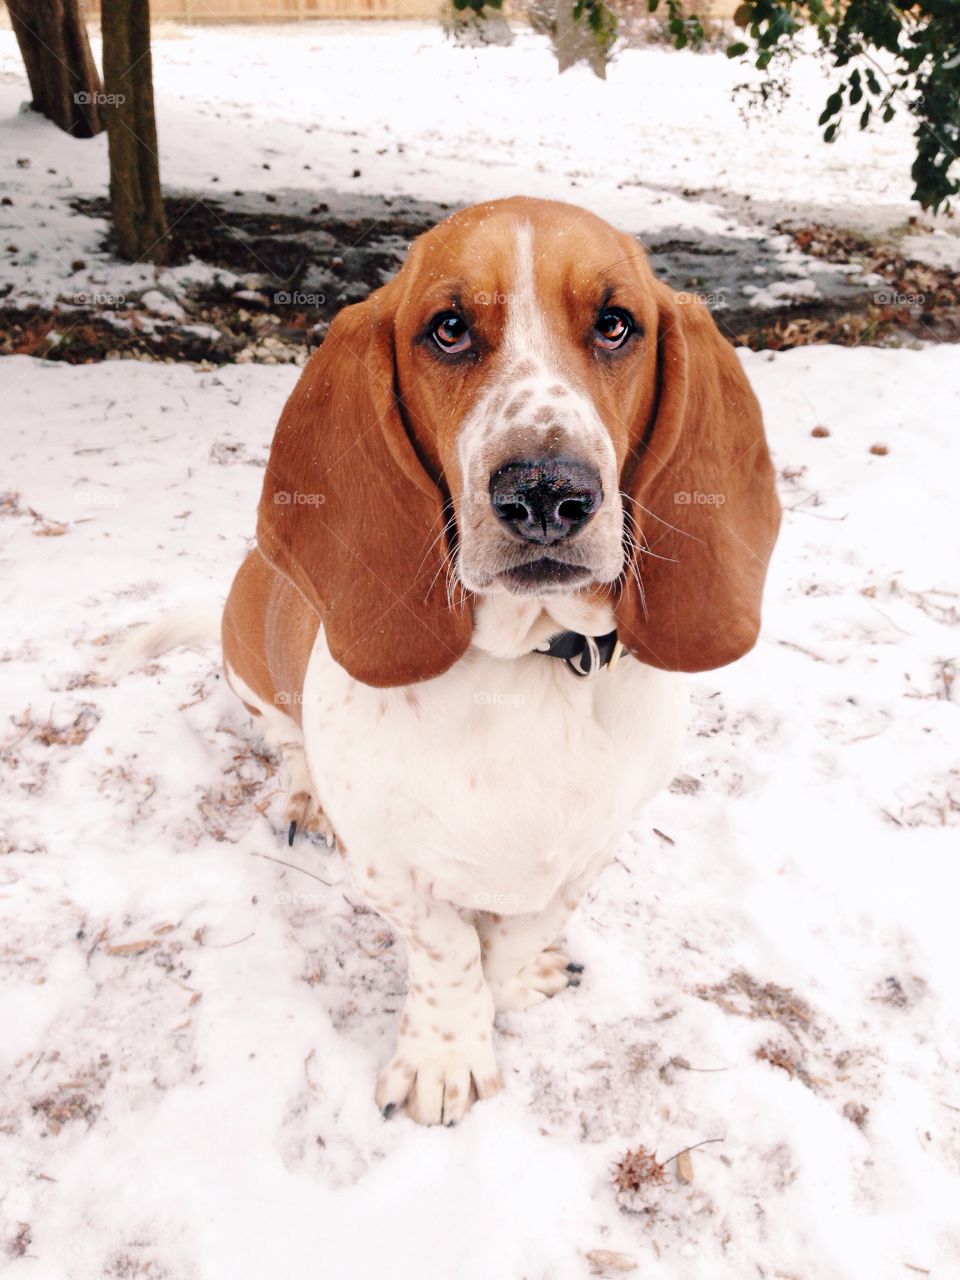 Basset Hound In Snow. Basset hound puppy standing in snow